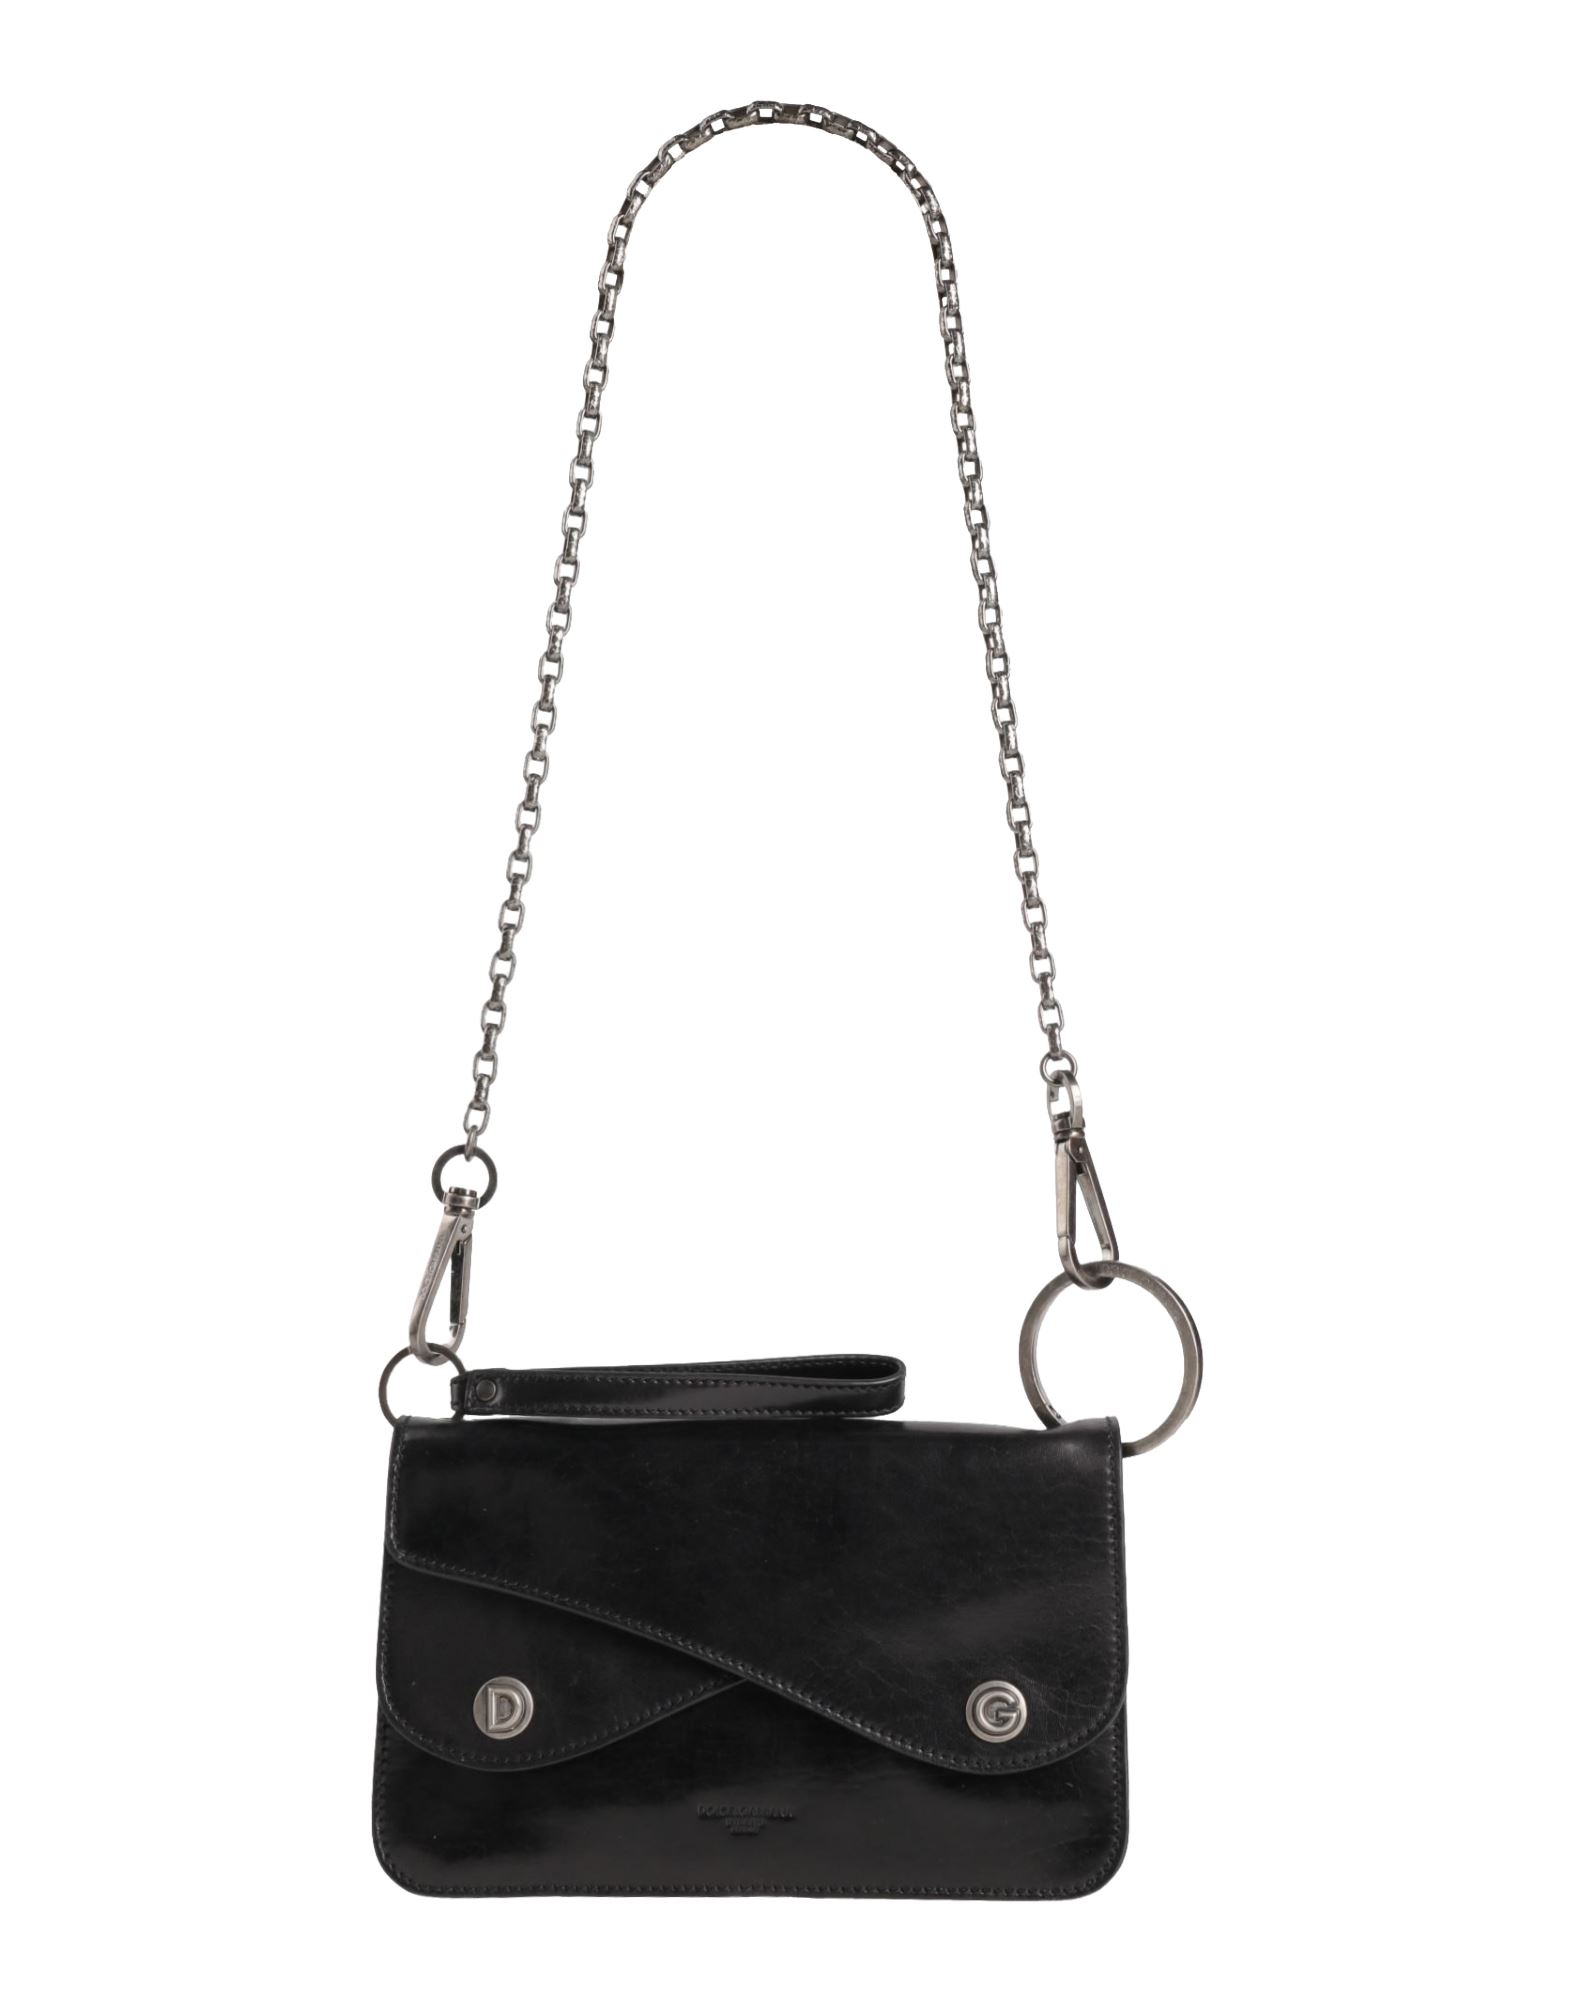 Dolce & Gabbana Man Shoulder Bag Black Size - Soft Leather